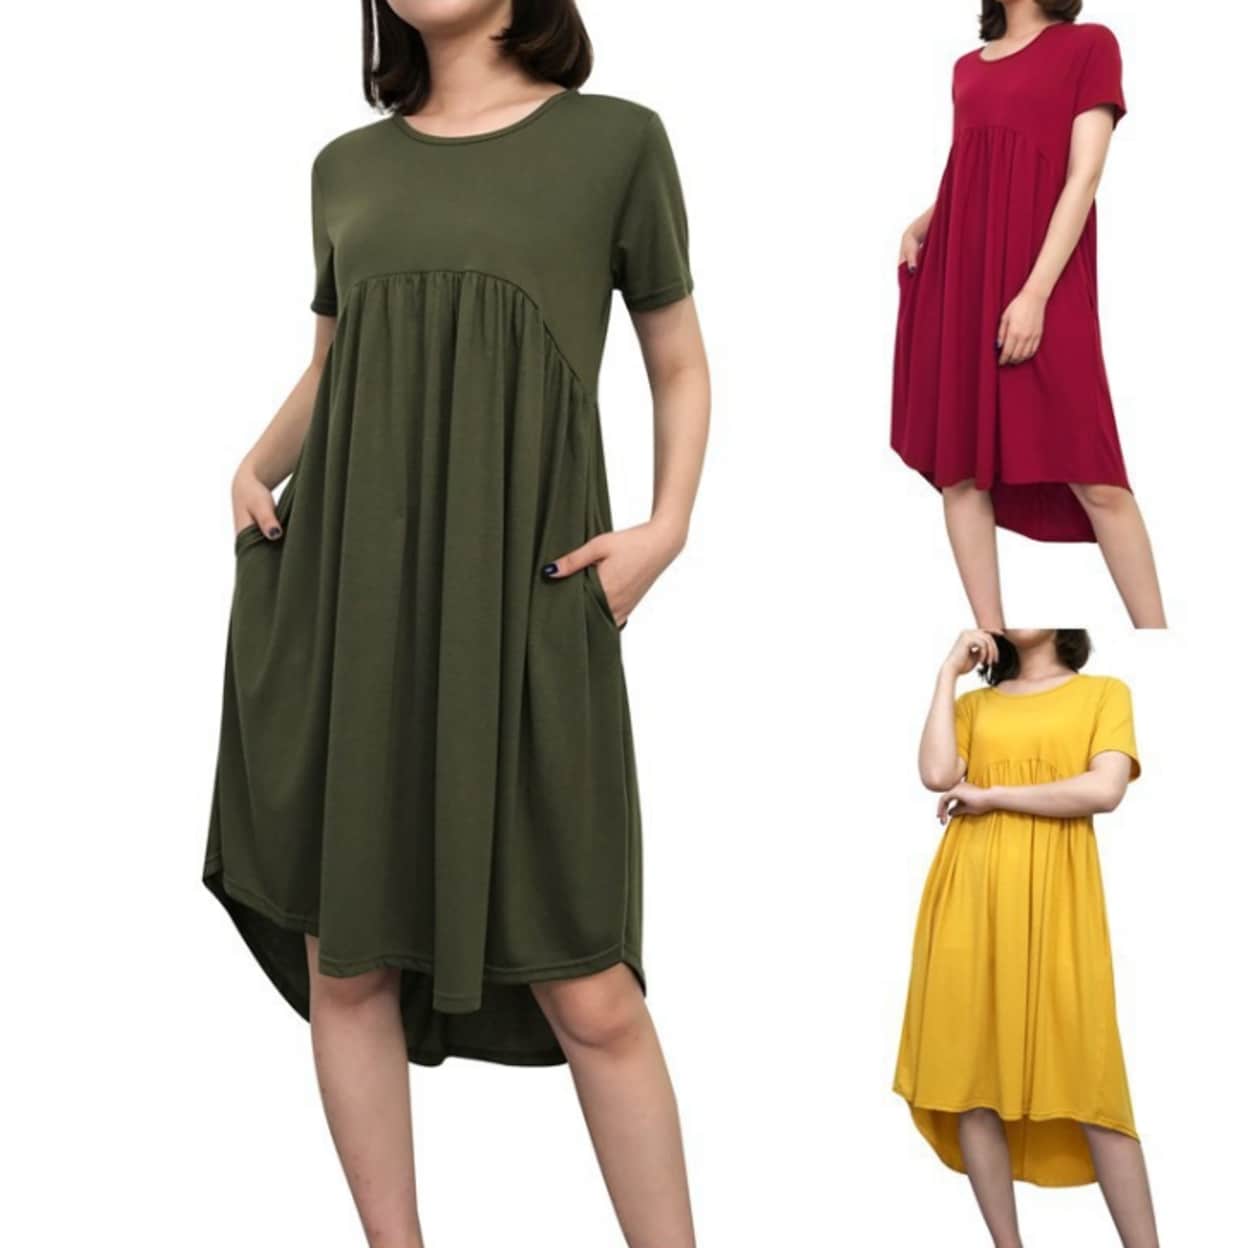 women's midi length summer dresses